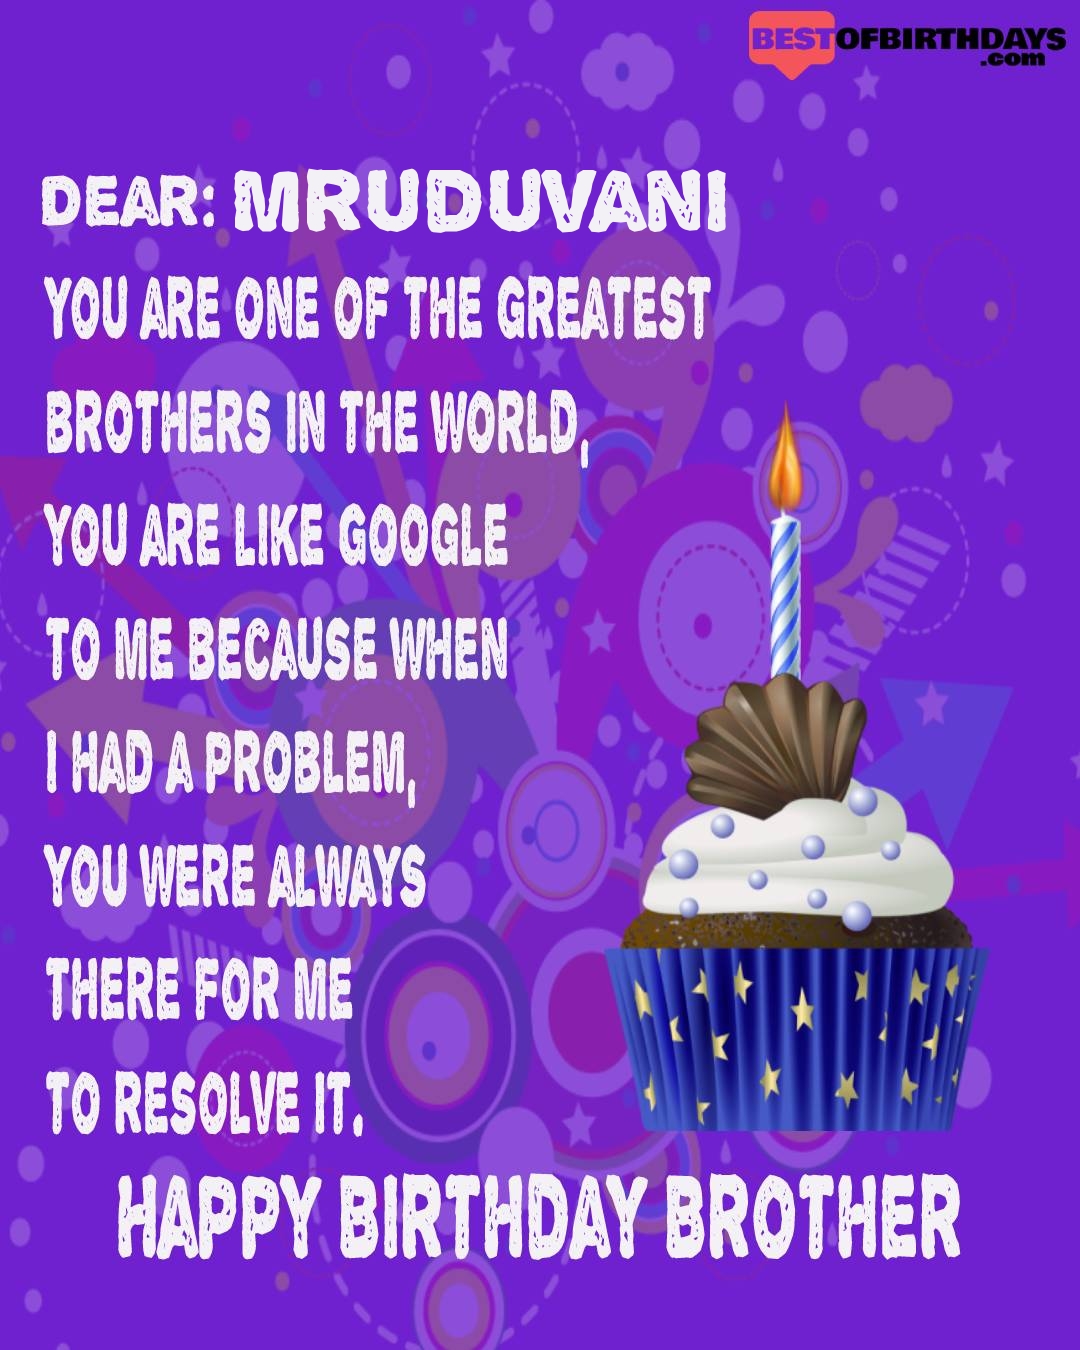 Happy birthday mruduvani bhai brother bro